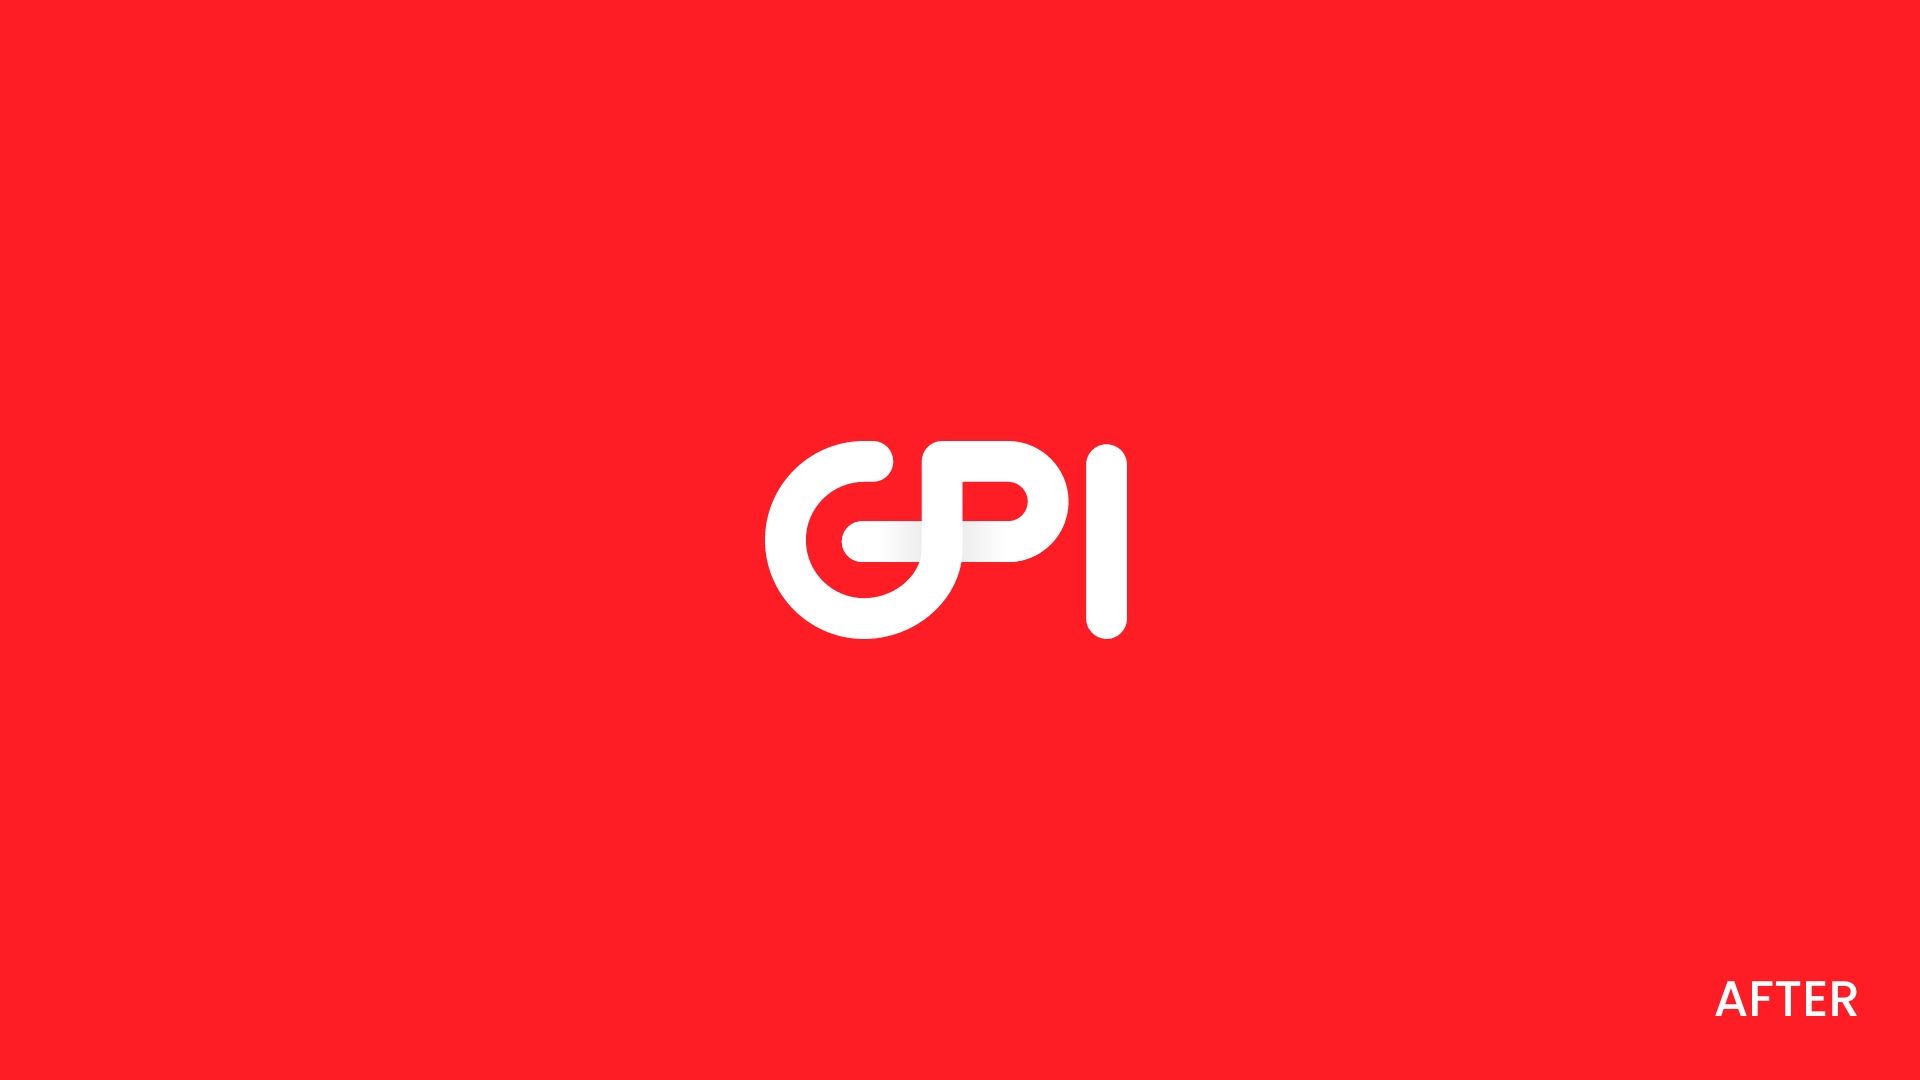 gpi_logo_apres